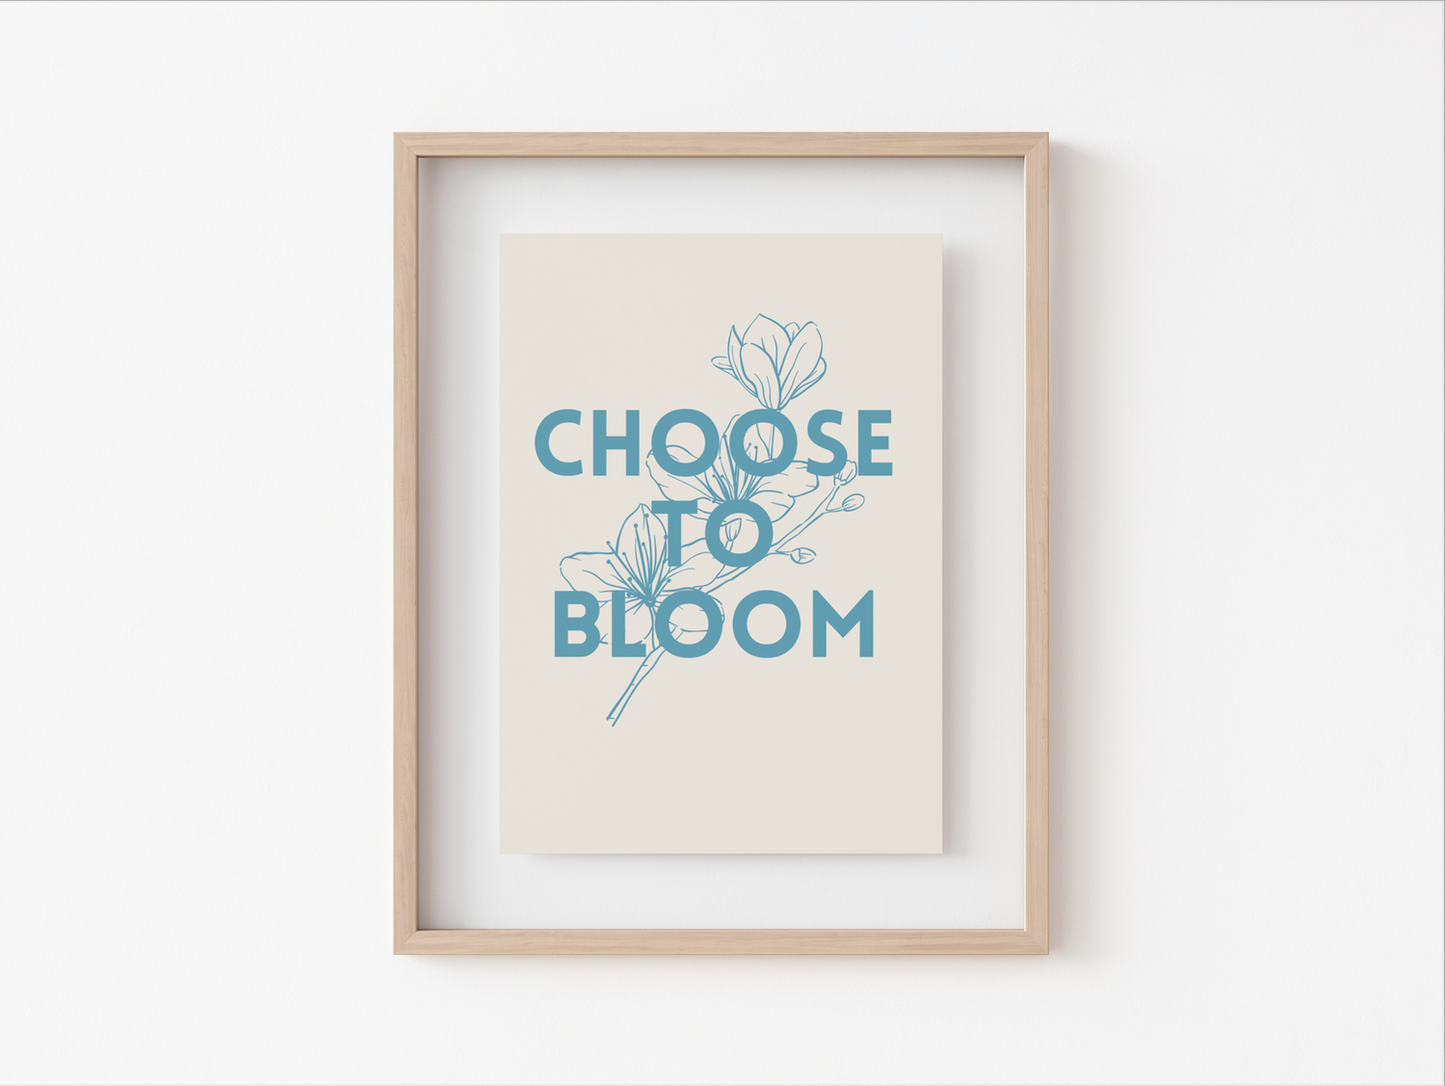 Choose to Bloom Print